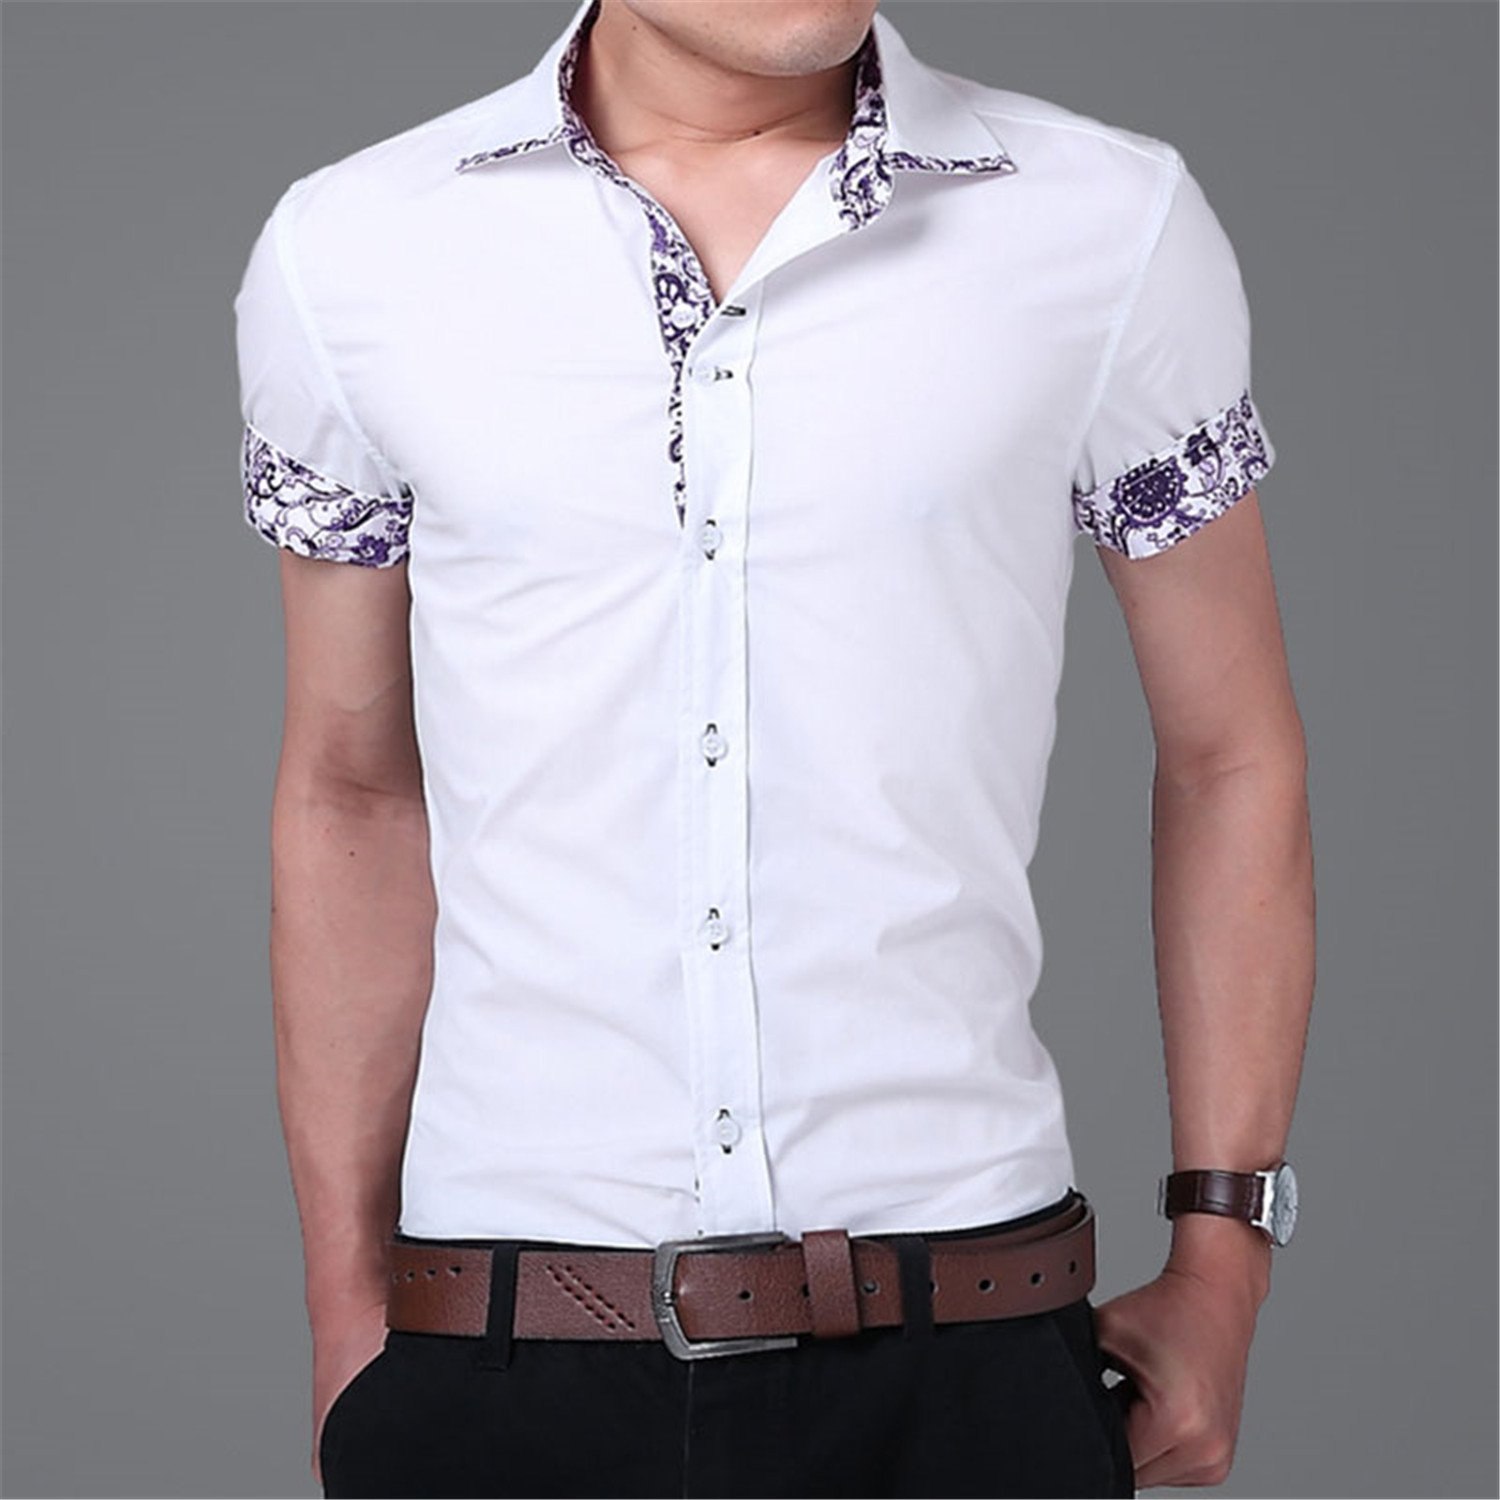 Мужские рубашки каталог. Рубашка мужская. Стильные мужские рубашки. Стильная рубашка. Рубашка с коротким рукавом мужская.